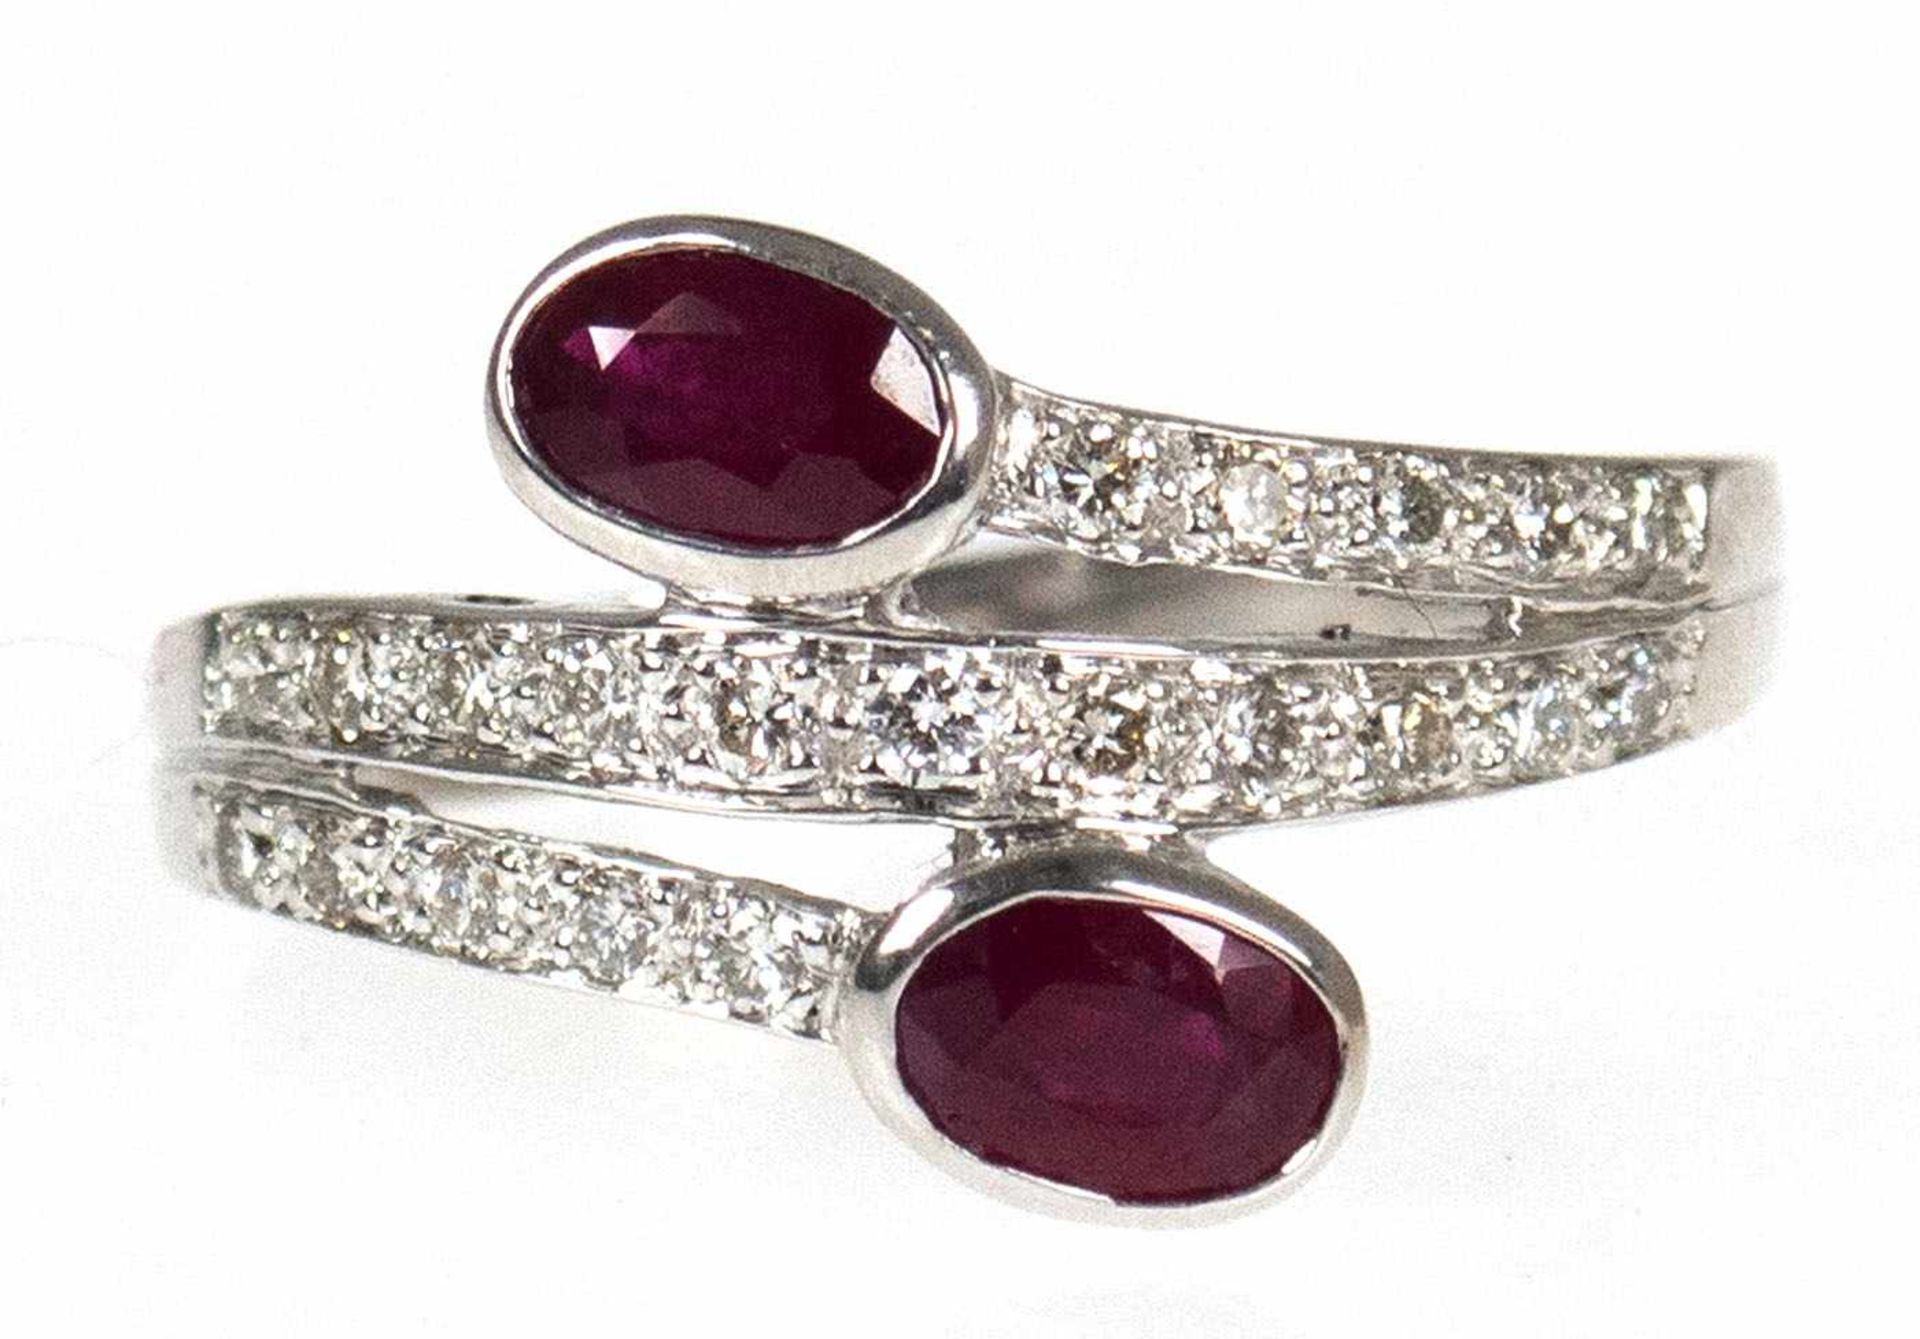 Ring, 750er WG, 2 Rubine von exzellenter Farbe, Brillanten zus. ca. 0,30 ct., RG 61,